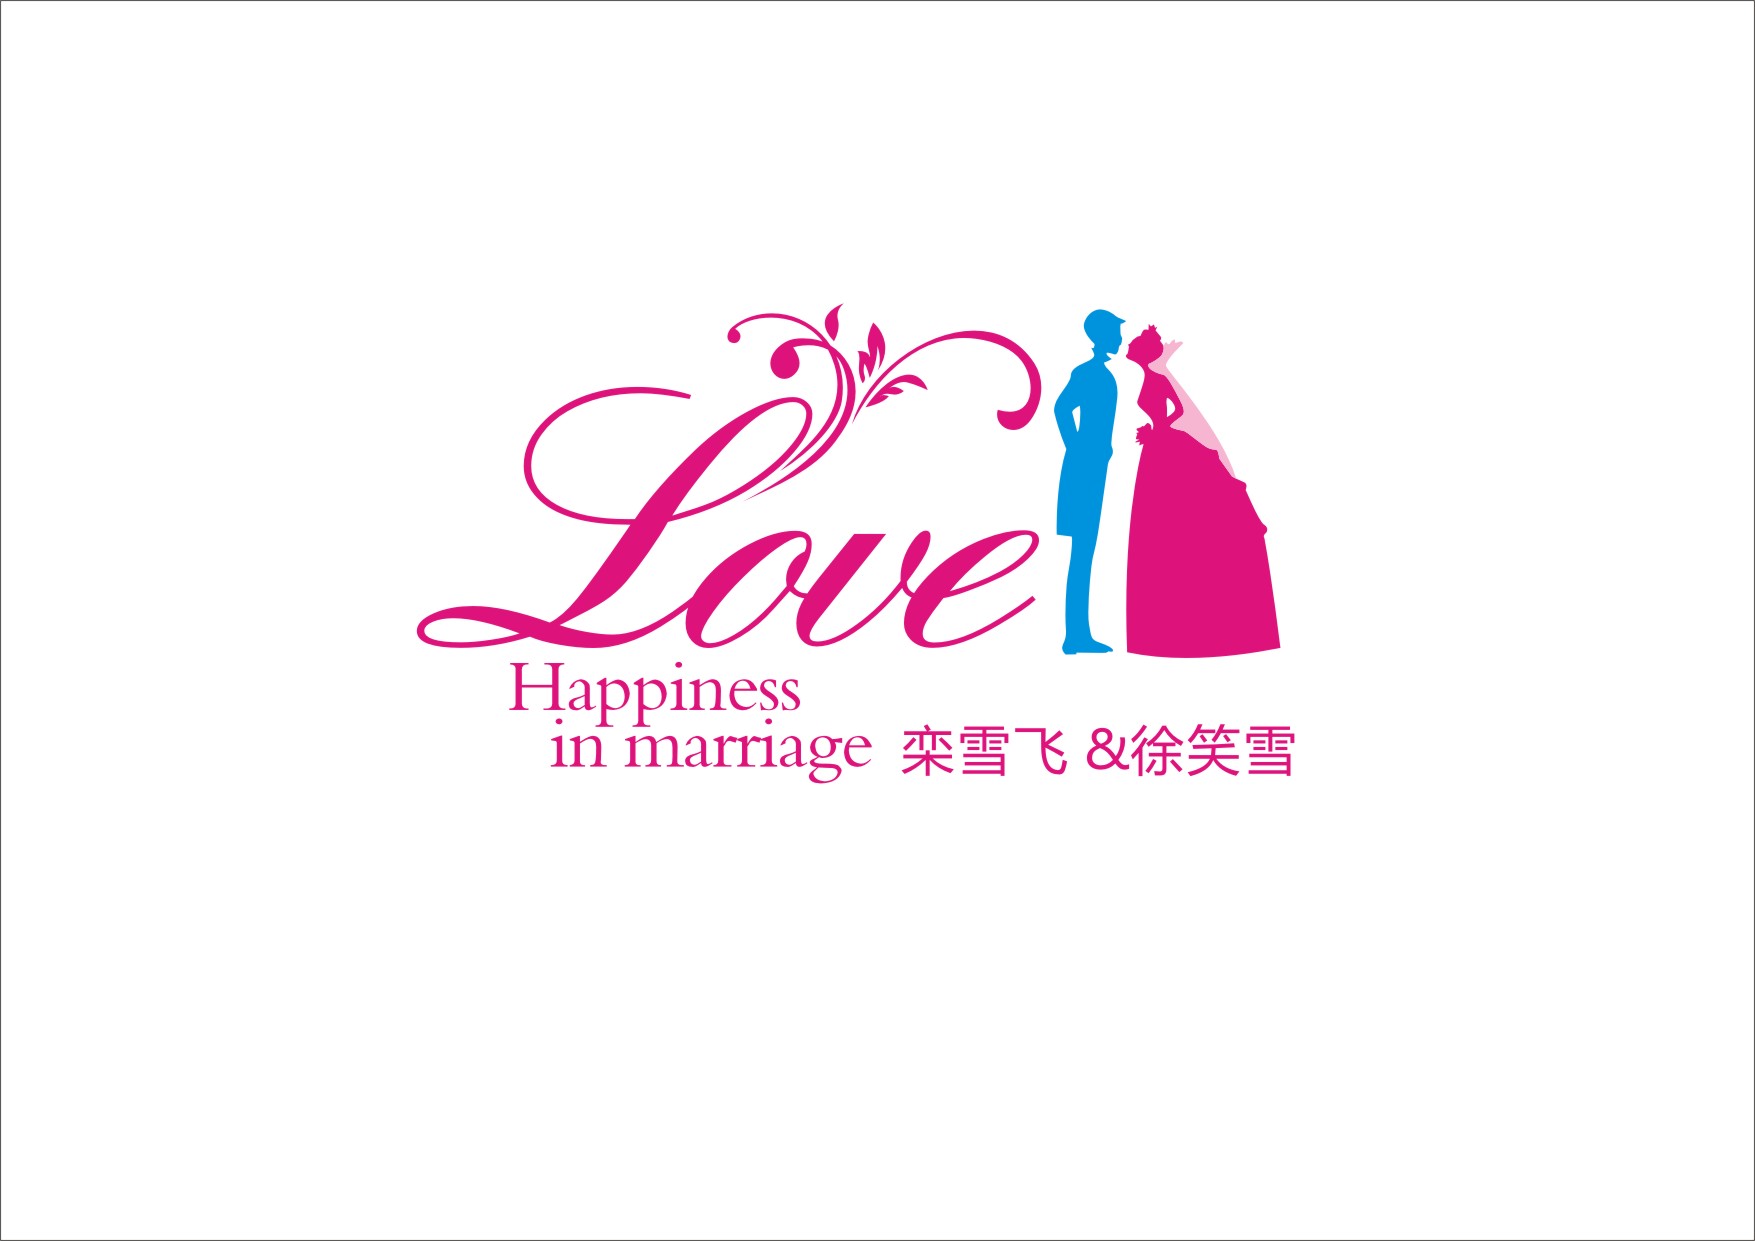 婚礼logo设计第33666054号稿件